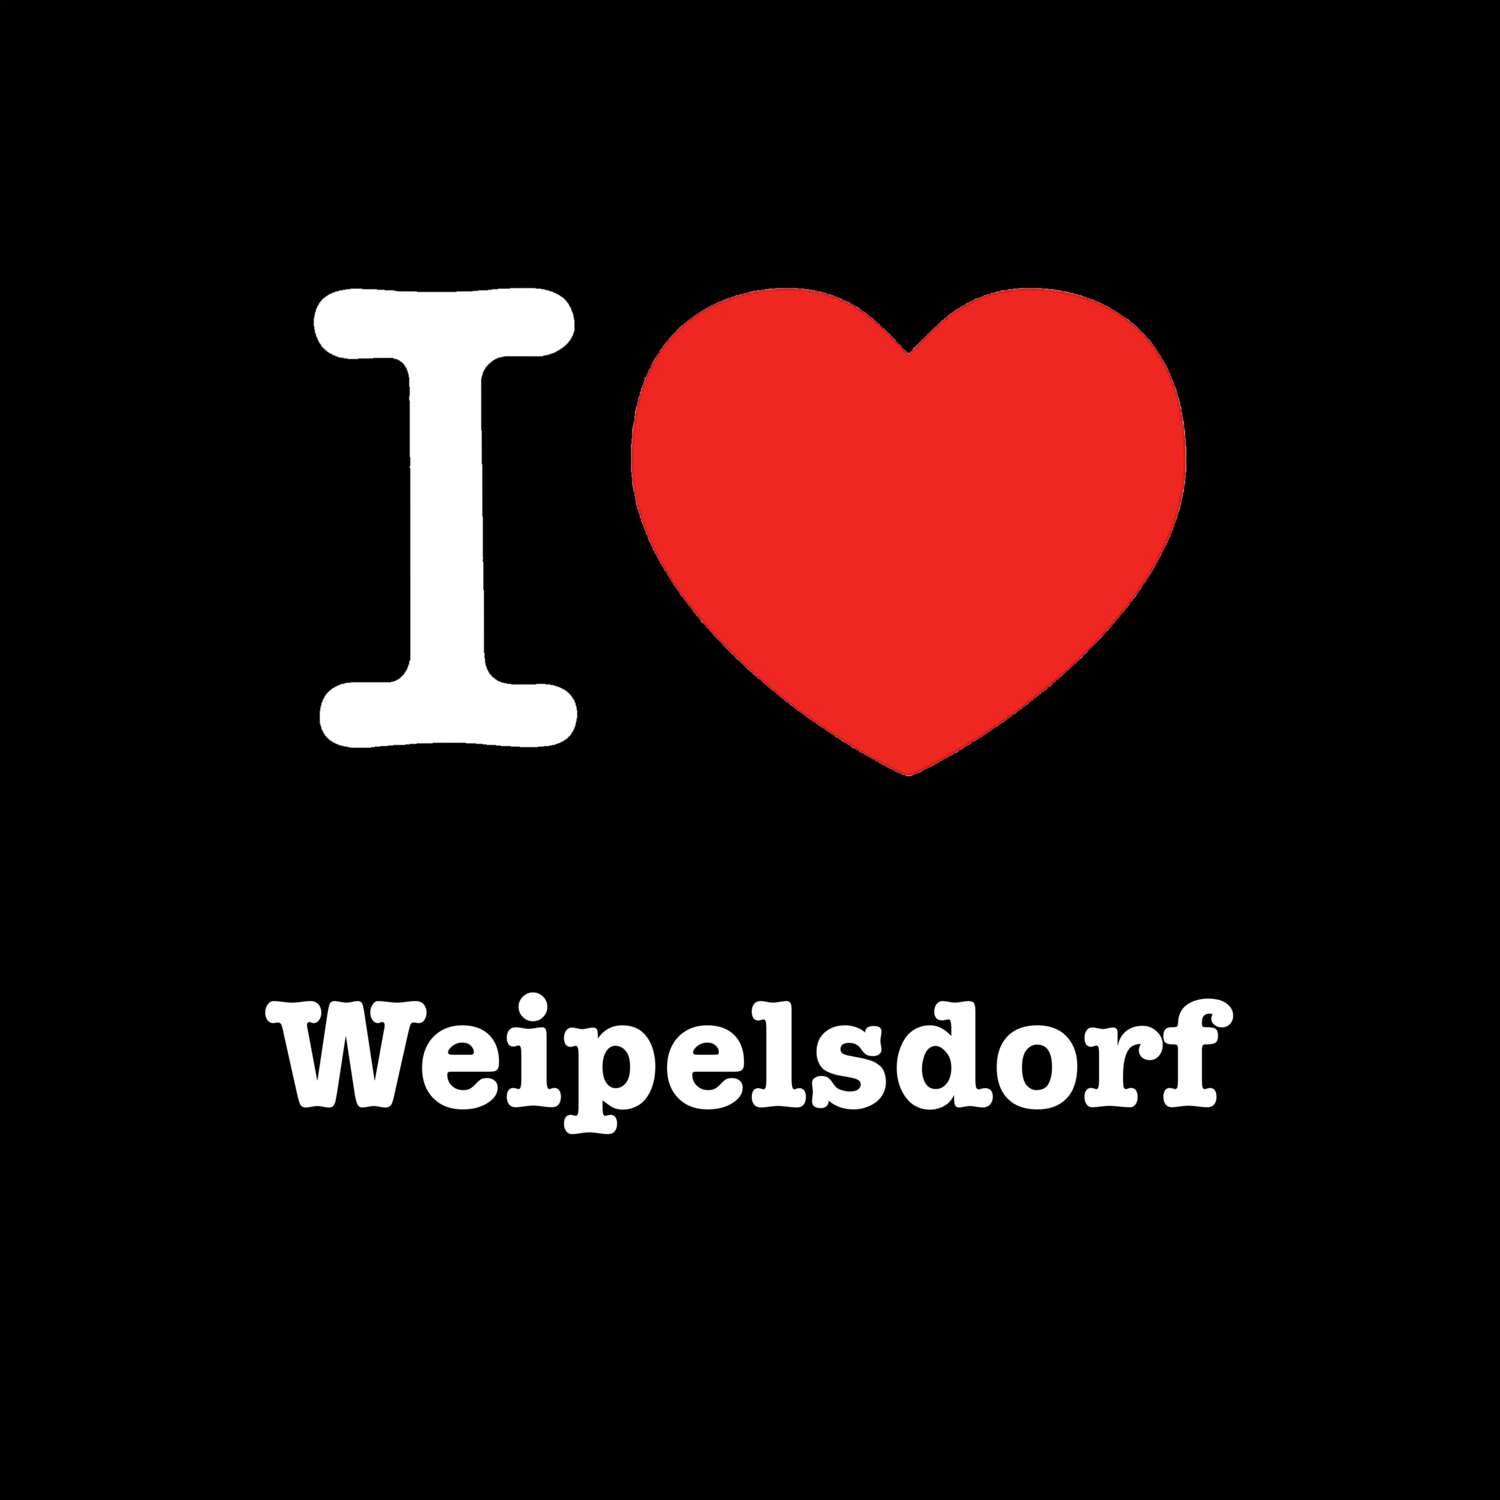 Weipelsdorf T-Shirt »I love«